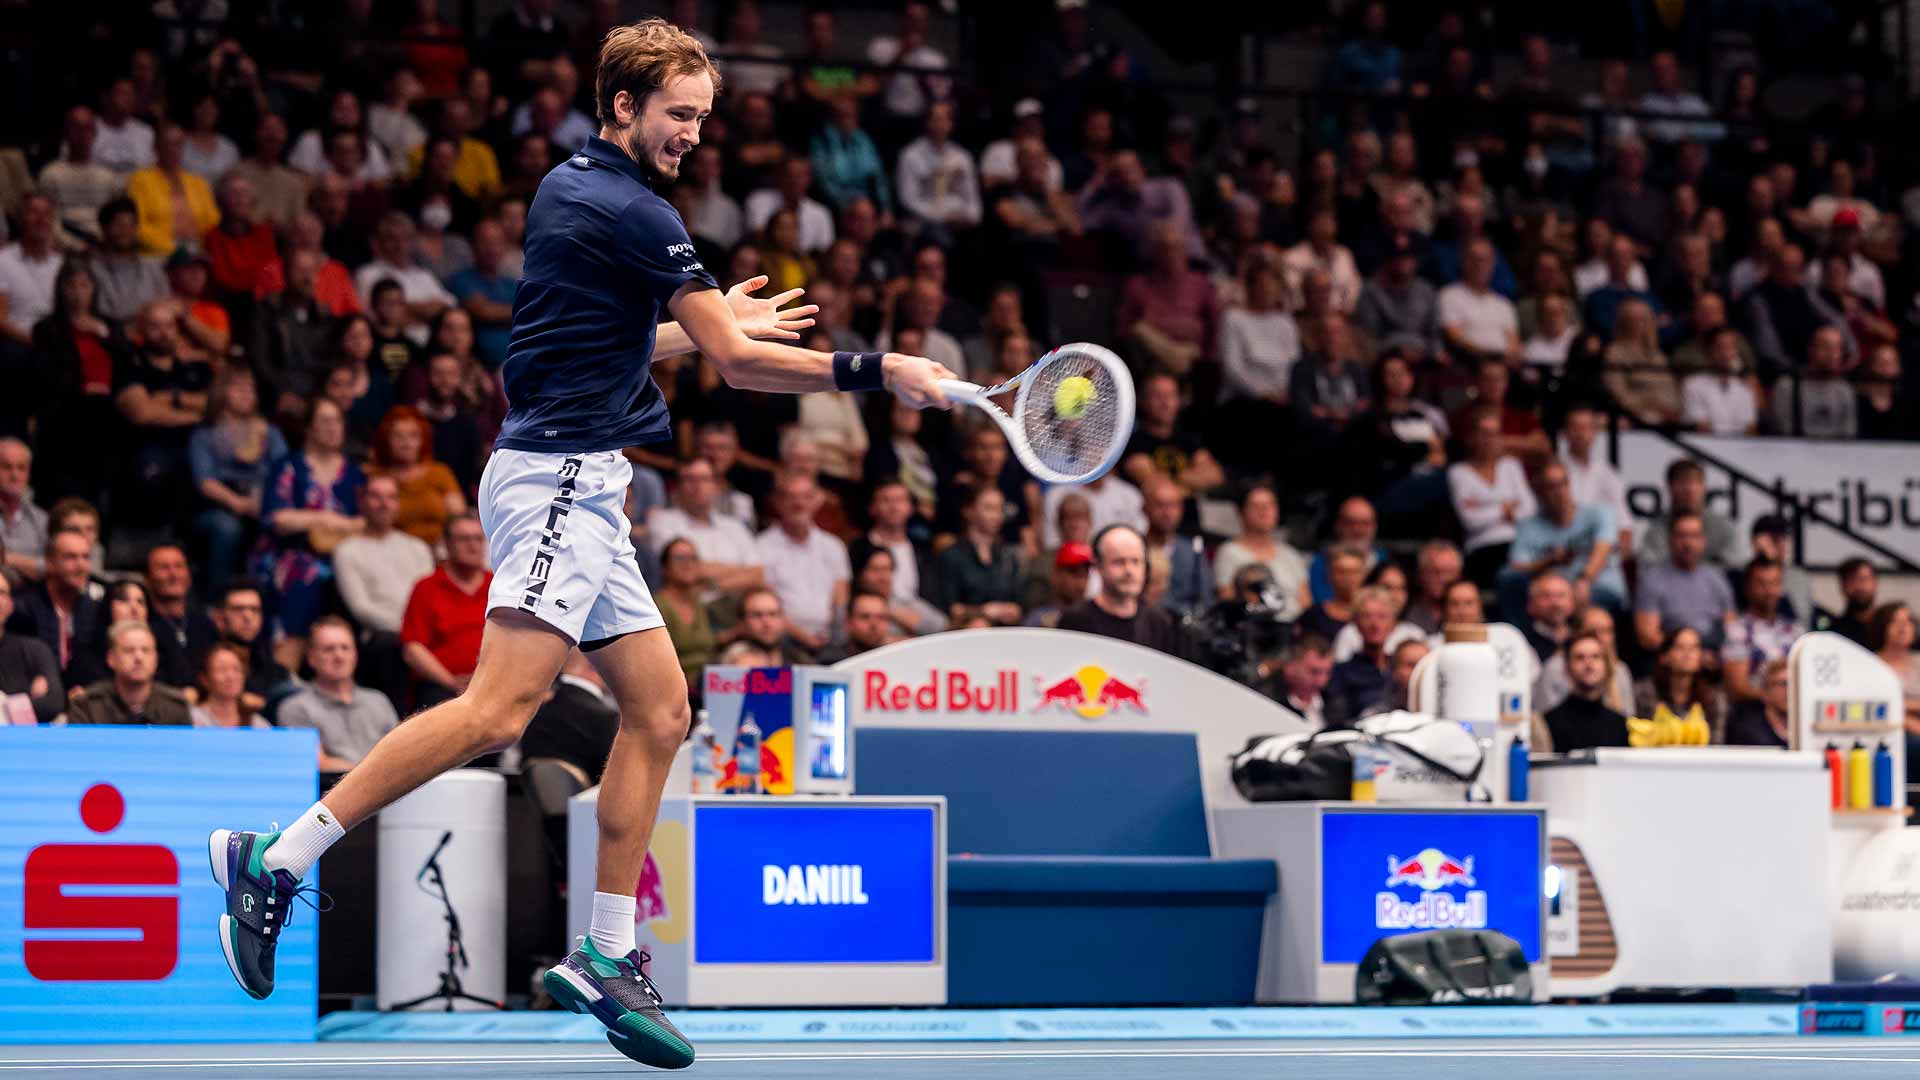 Danill Medvedev Defeats Stefanos Tsitsipas, Reaches Vienna Final, ATP Tour